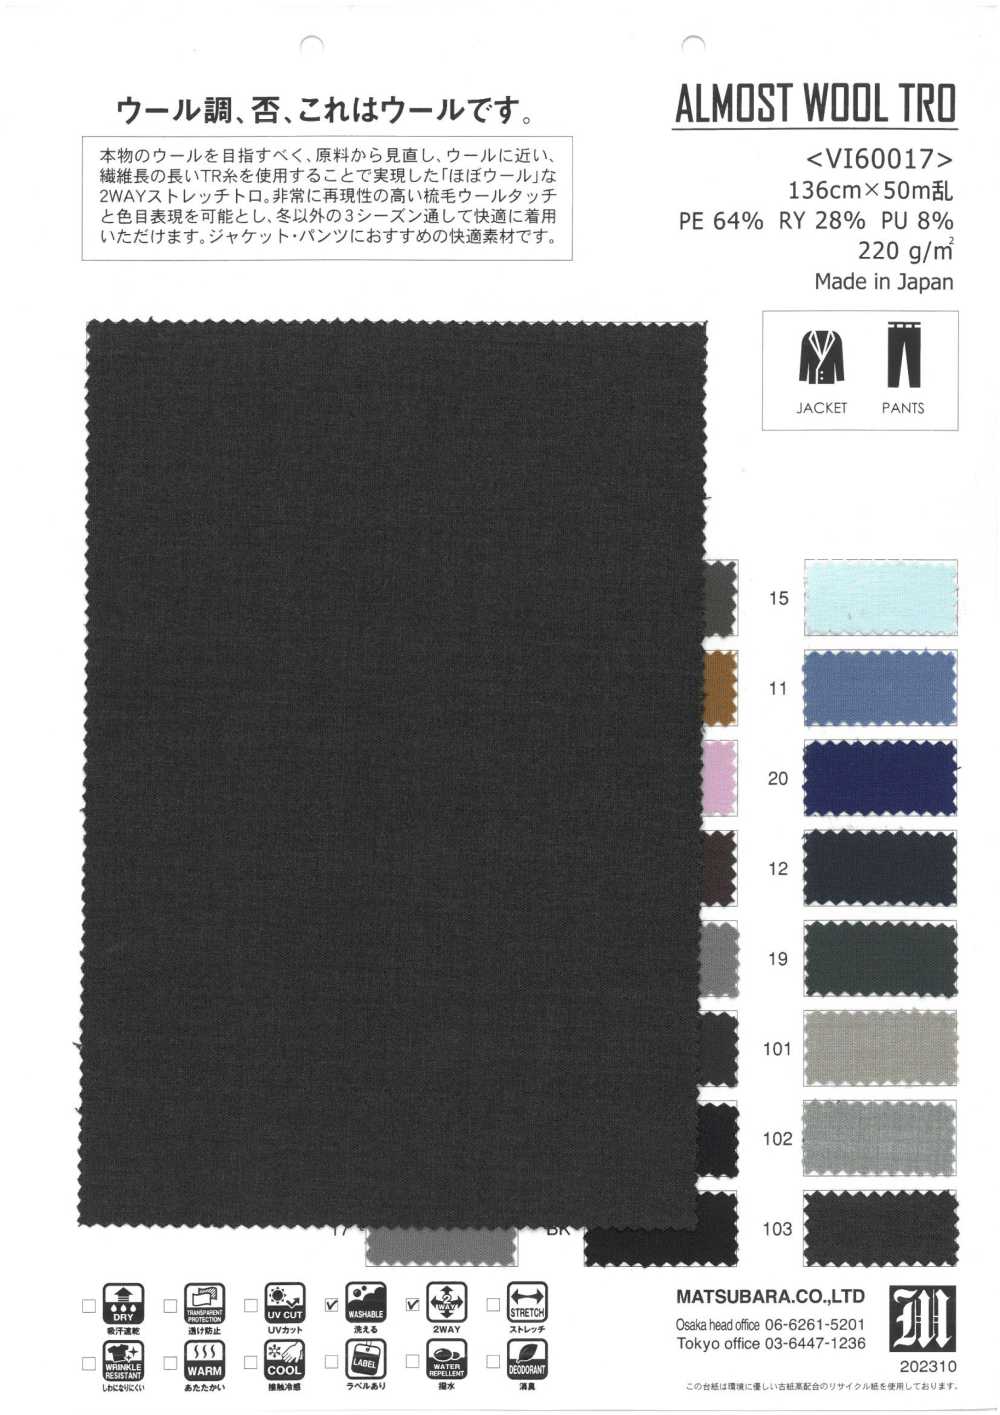 VI60017 ALMOST WOOL TRO[Textile / Fabric] Matsubara